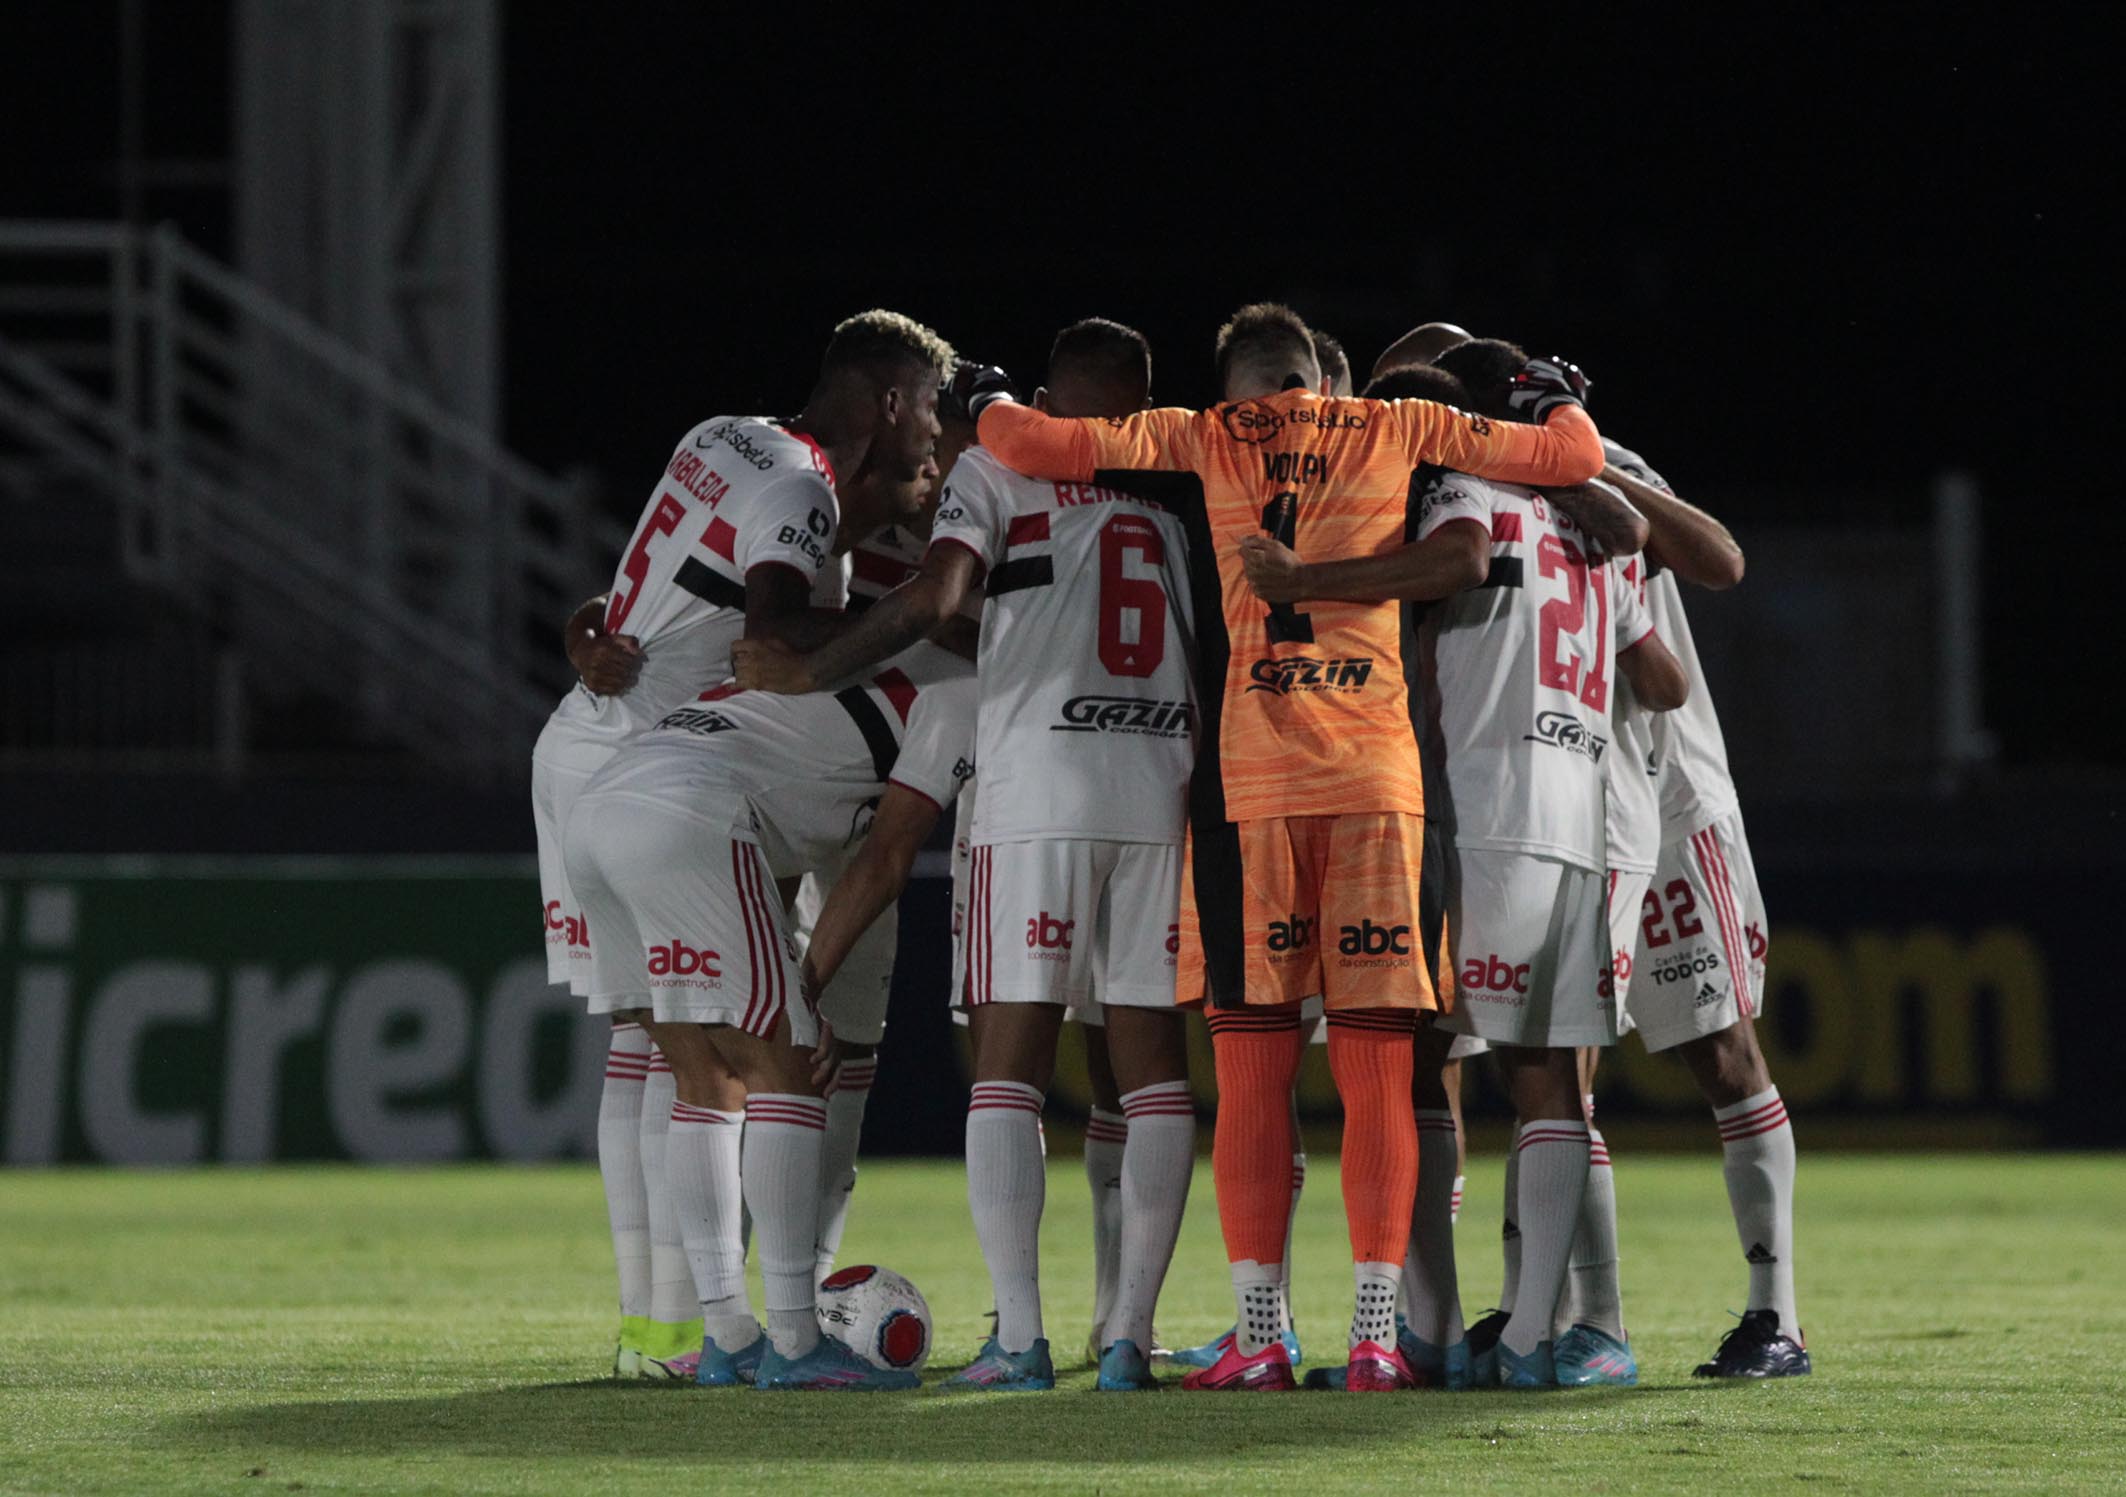 São Paulo tem segundo pior início no Campeonato Paulista em toda sua história